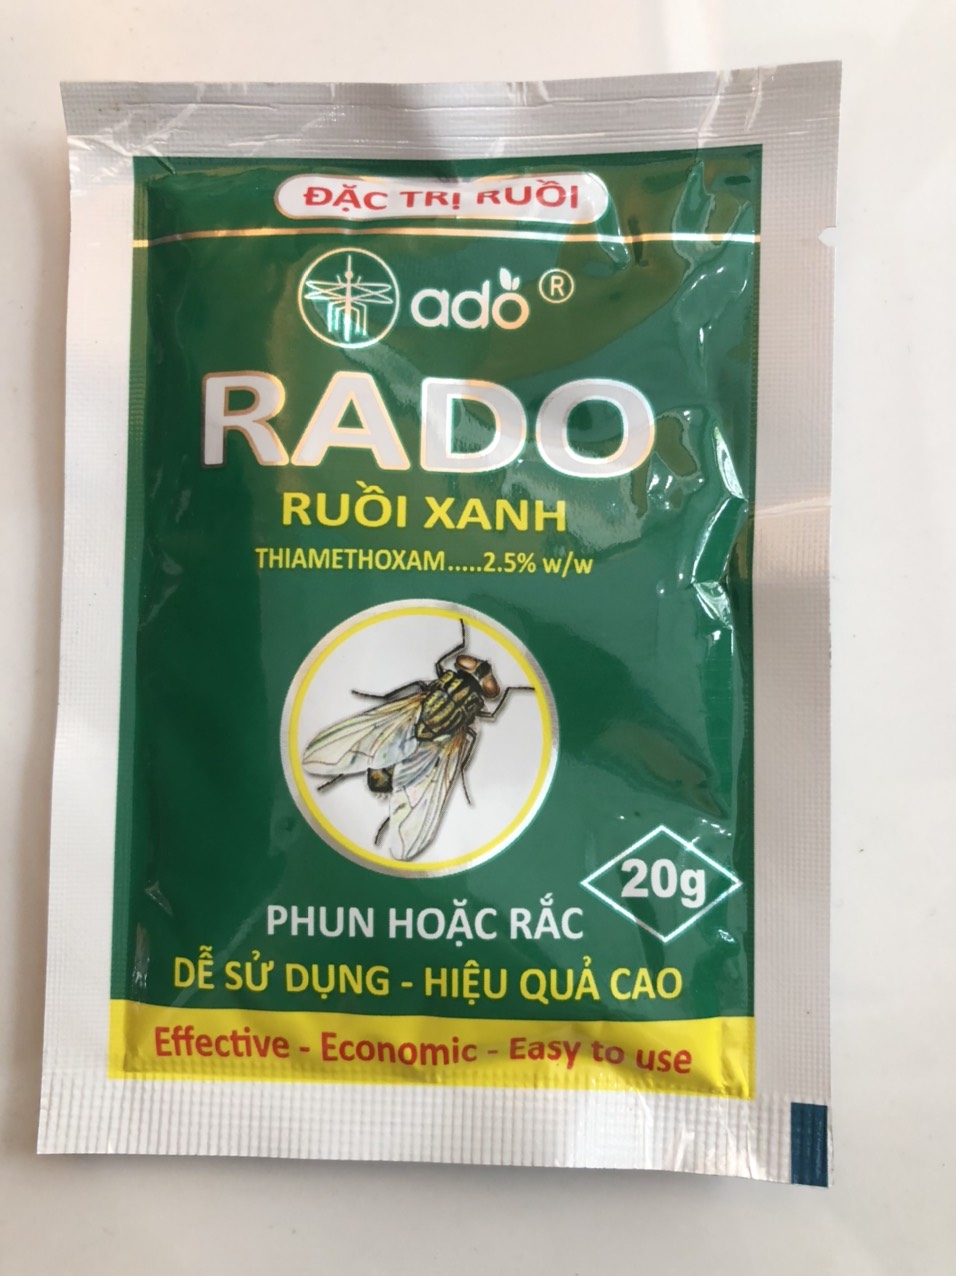 Thuốc diệt ruồi Rado - Gói 20g